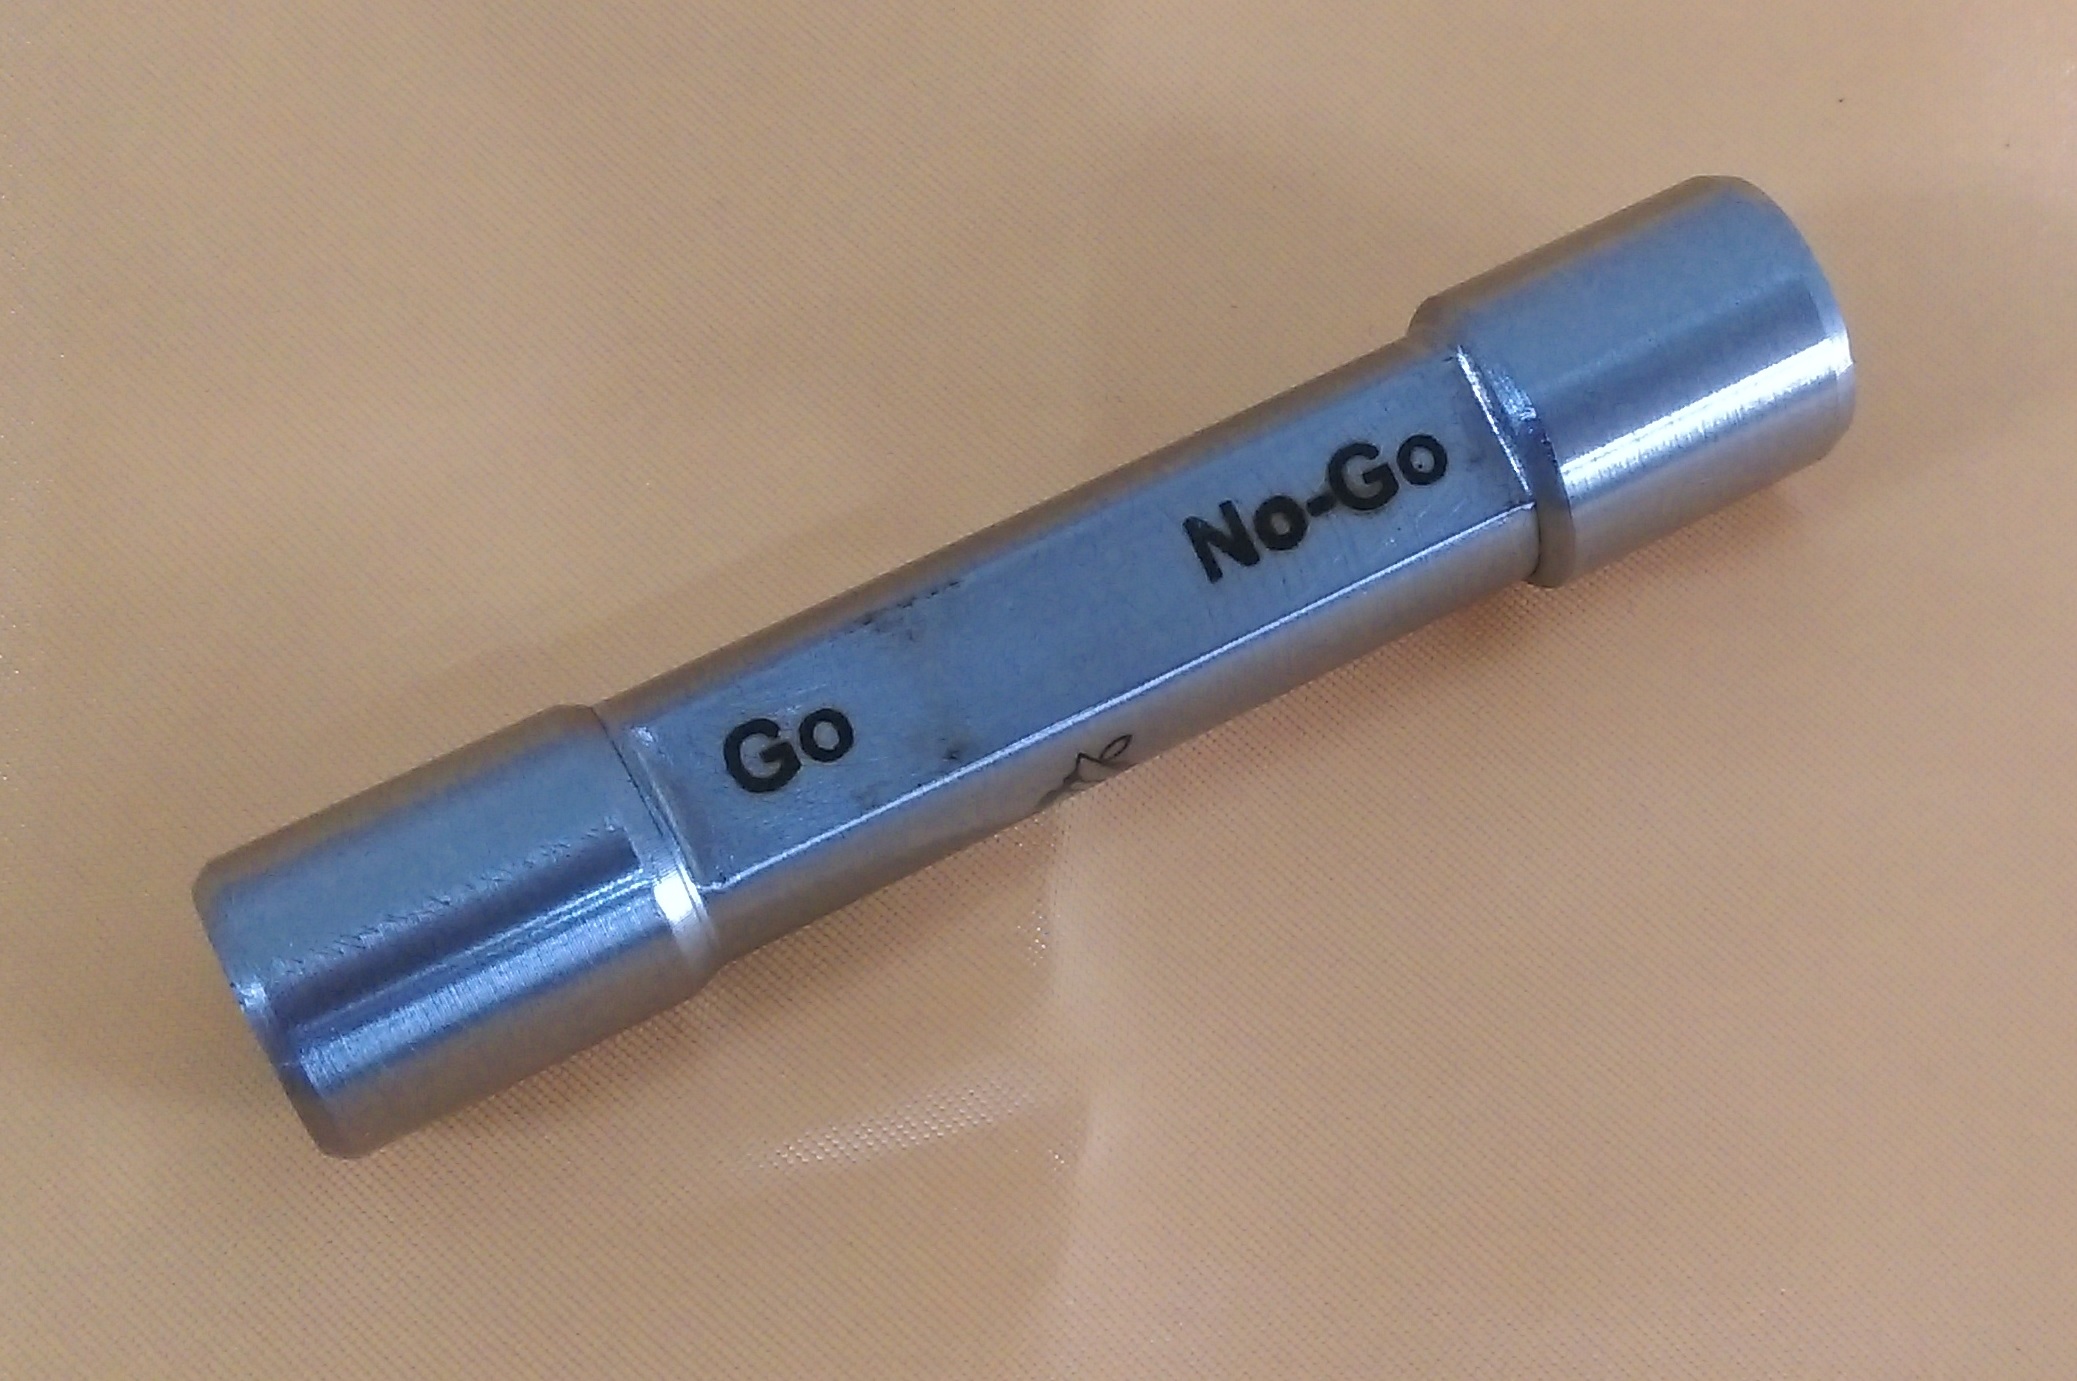 گیج GO-no go  دهانه داخلی